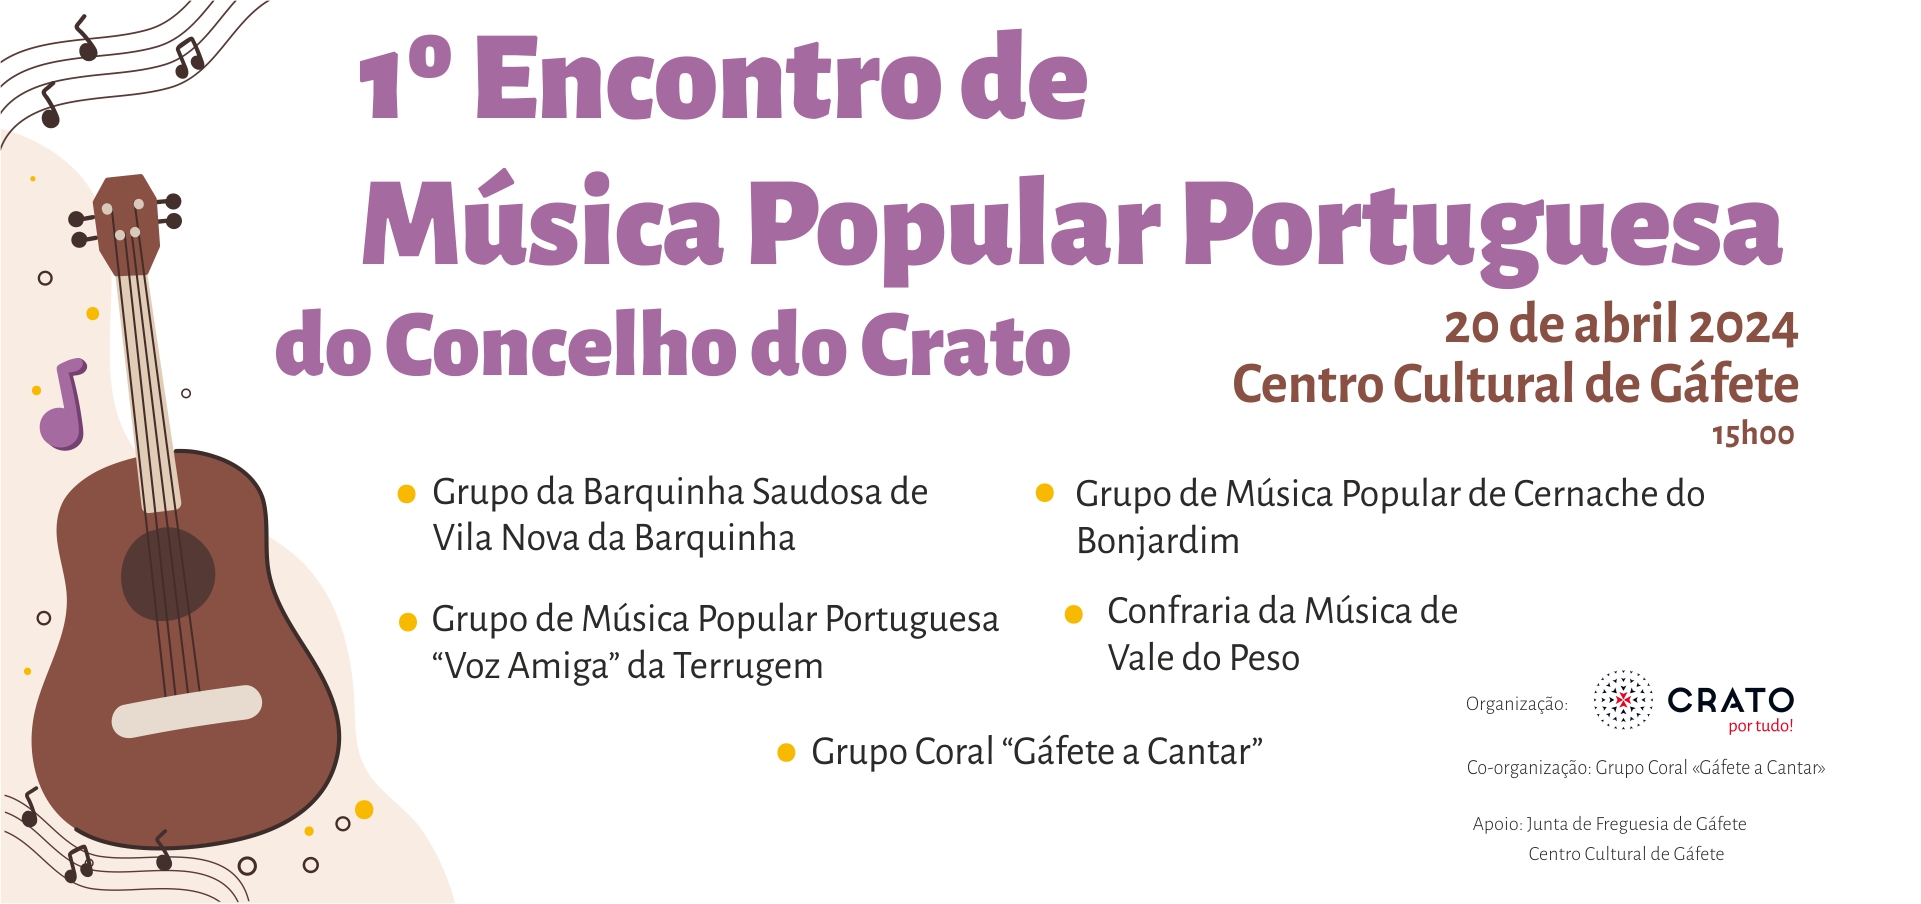 1º Encontro de Música Popular Portuguesa do Concelho do Crato